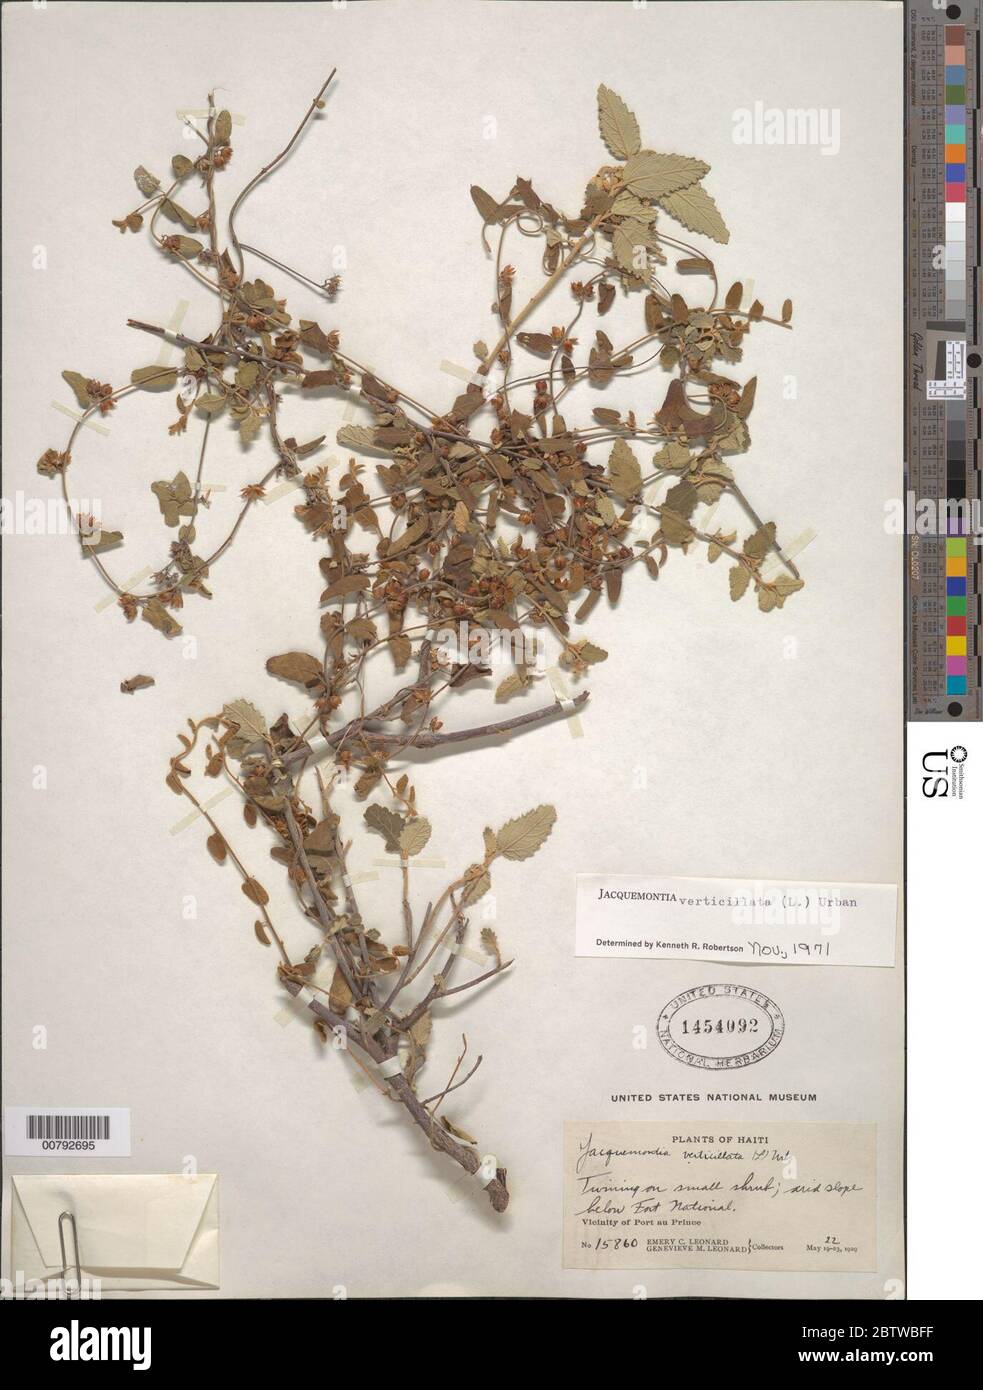 Jacquemontia verticillata L Urb. Stock Photo